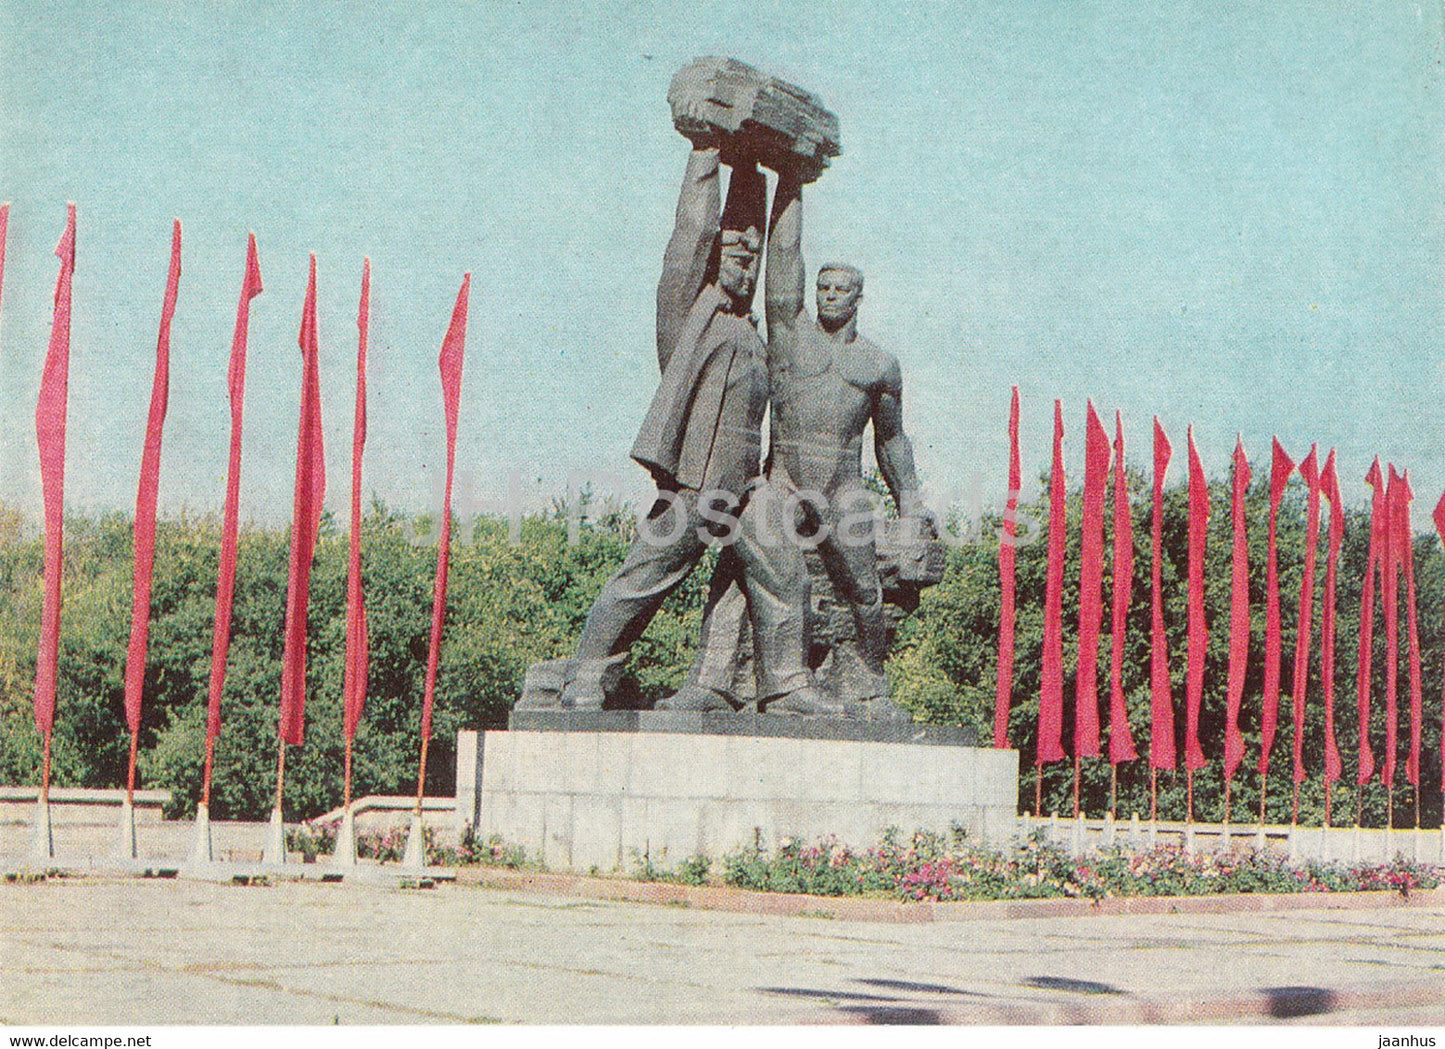 Karaganda - monument Miner's Glory - 1983 - Kazakhstan USSR - unused - JH Postcards